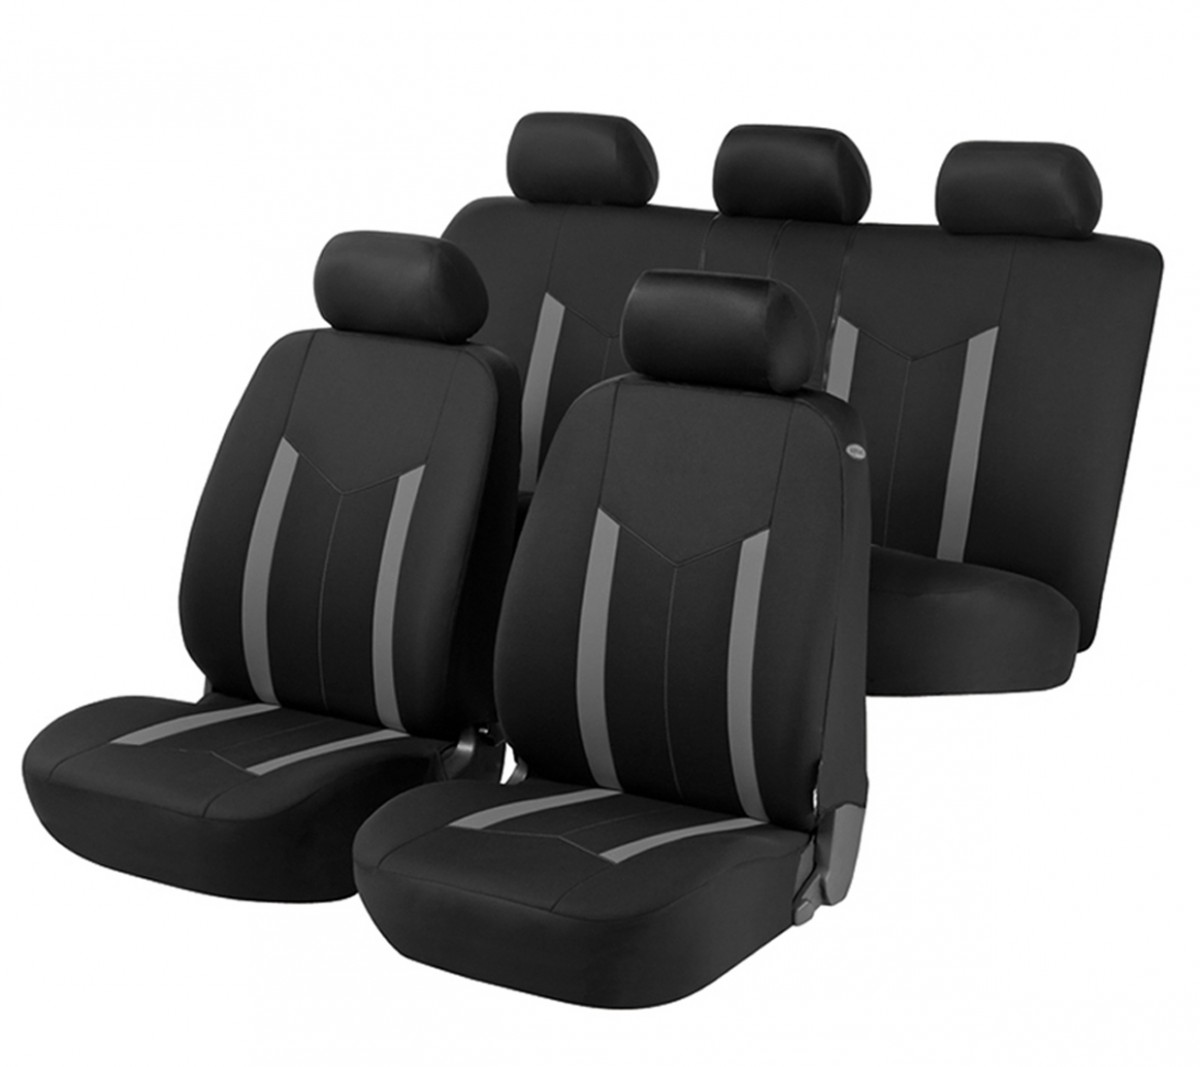 WEXY Leder Autositzbezüge Sets für Nissan Note/Note EU(E11) 2004-2013,  9-teiliges Set Sitzbezug Komplett-Set, Atmungsaktiv Komfortable Allwetter